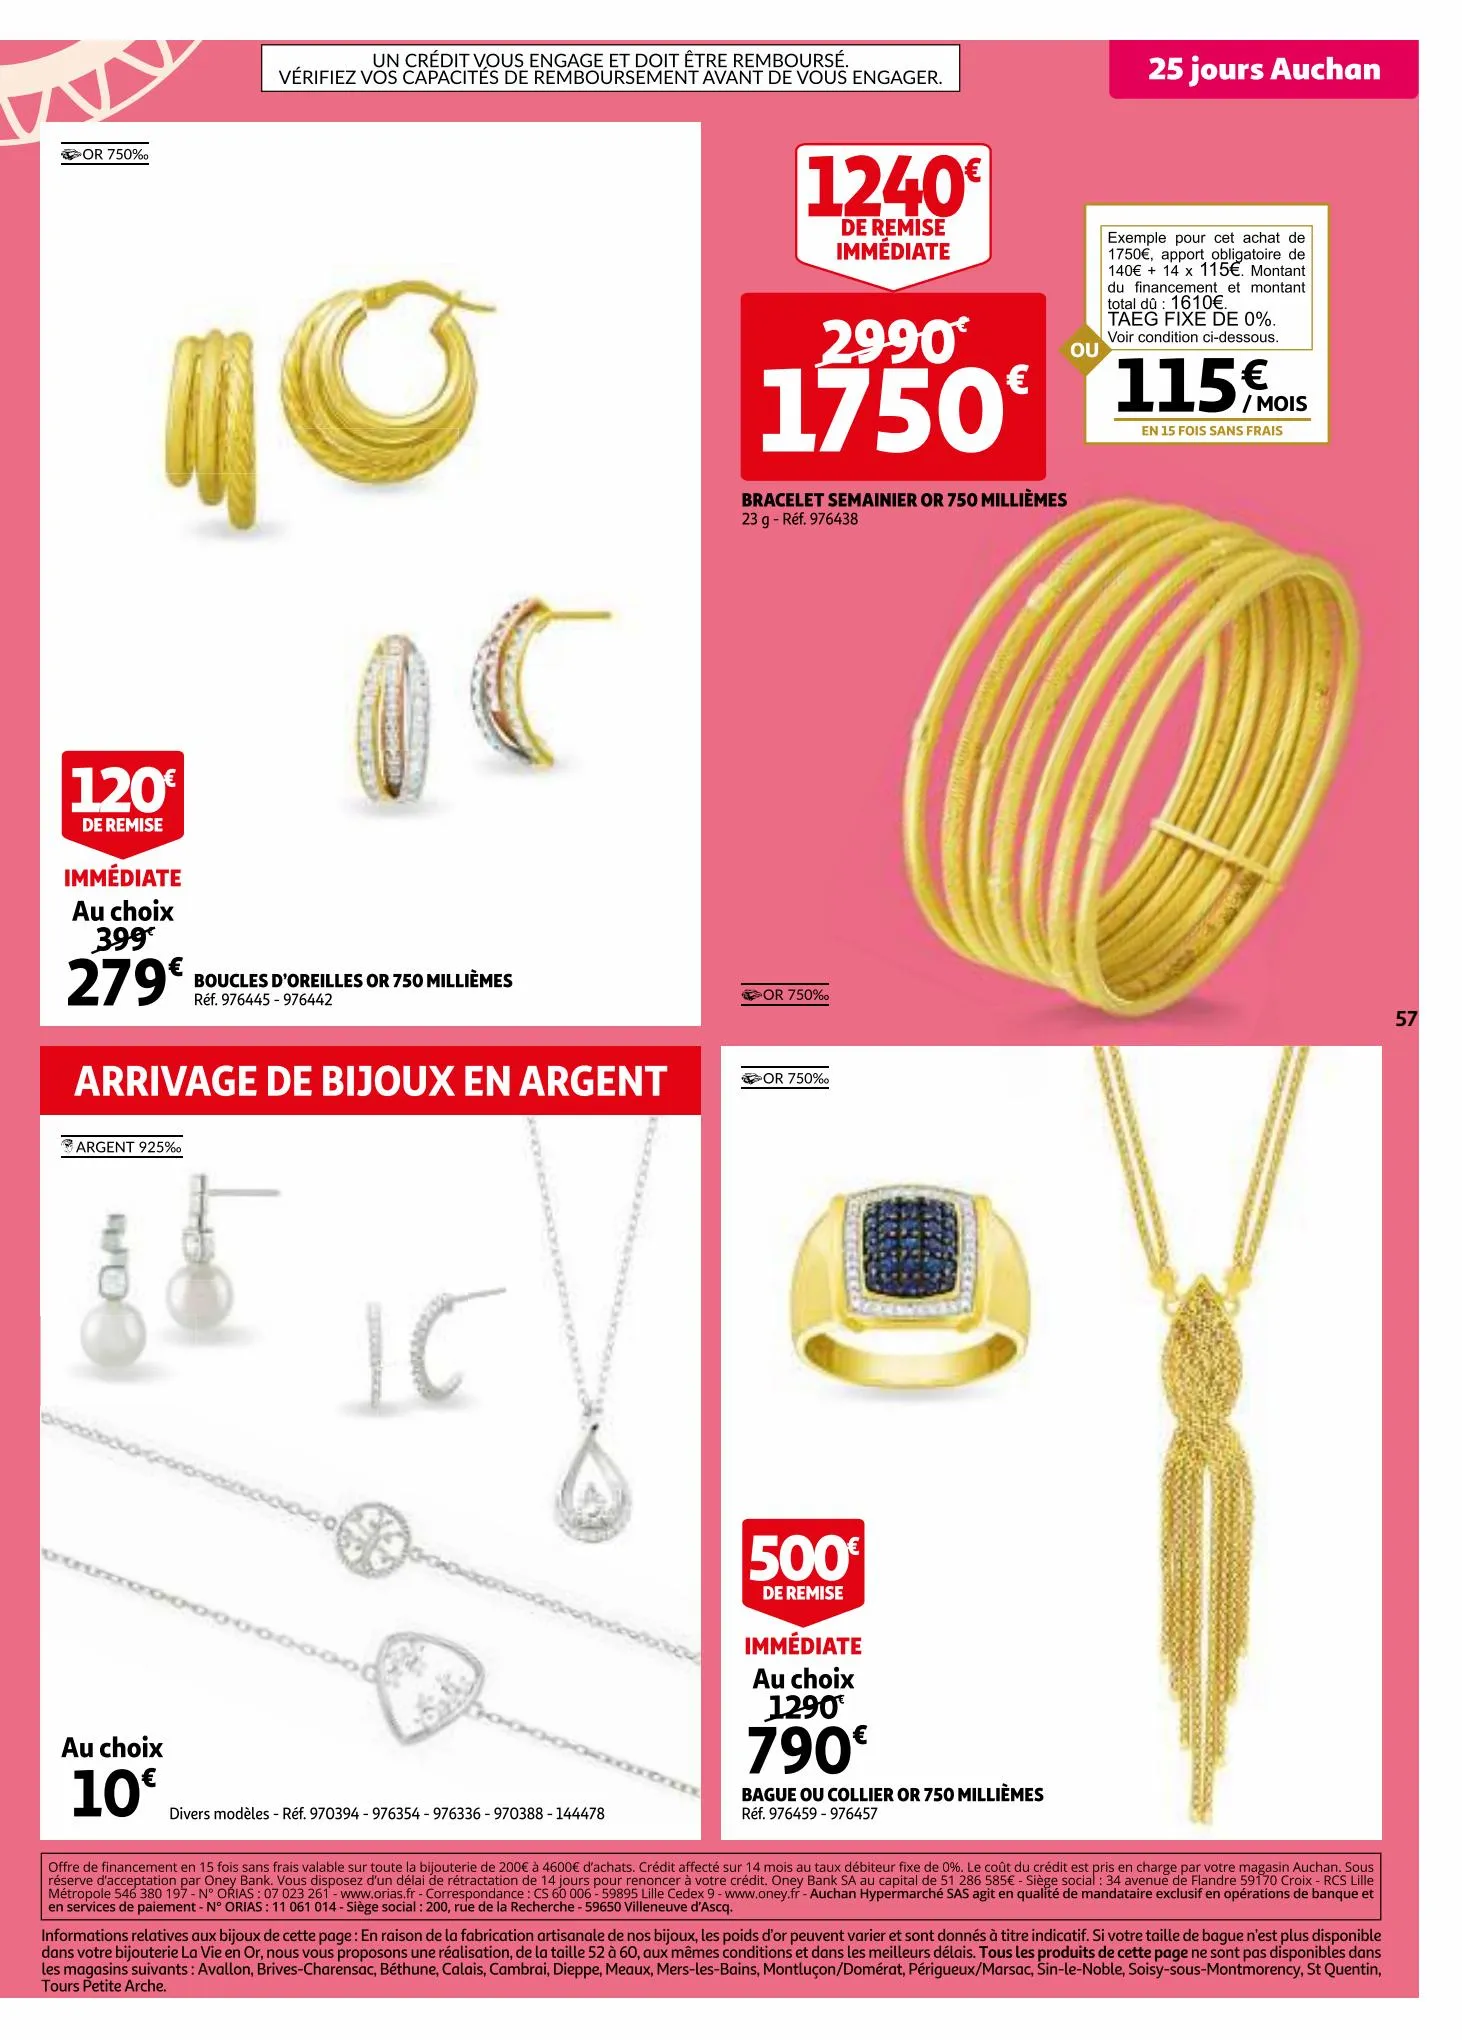 Catalogue 25 jours Auchan, page 00057